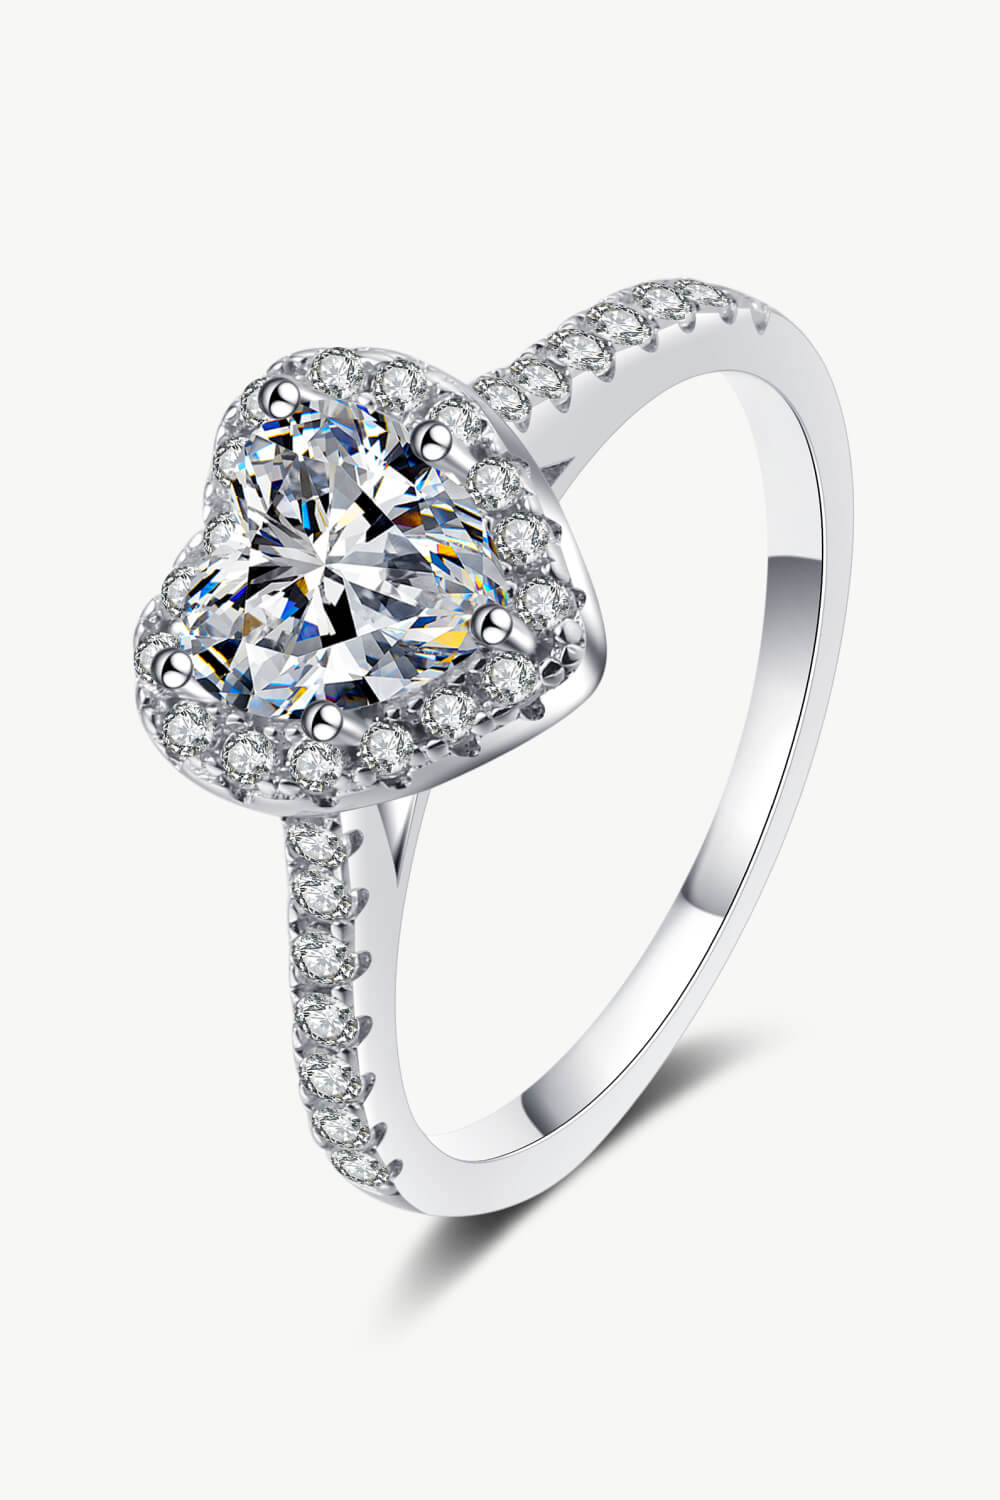 Moissanite Heart-Shaped Ring Image4